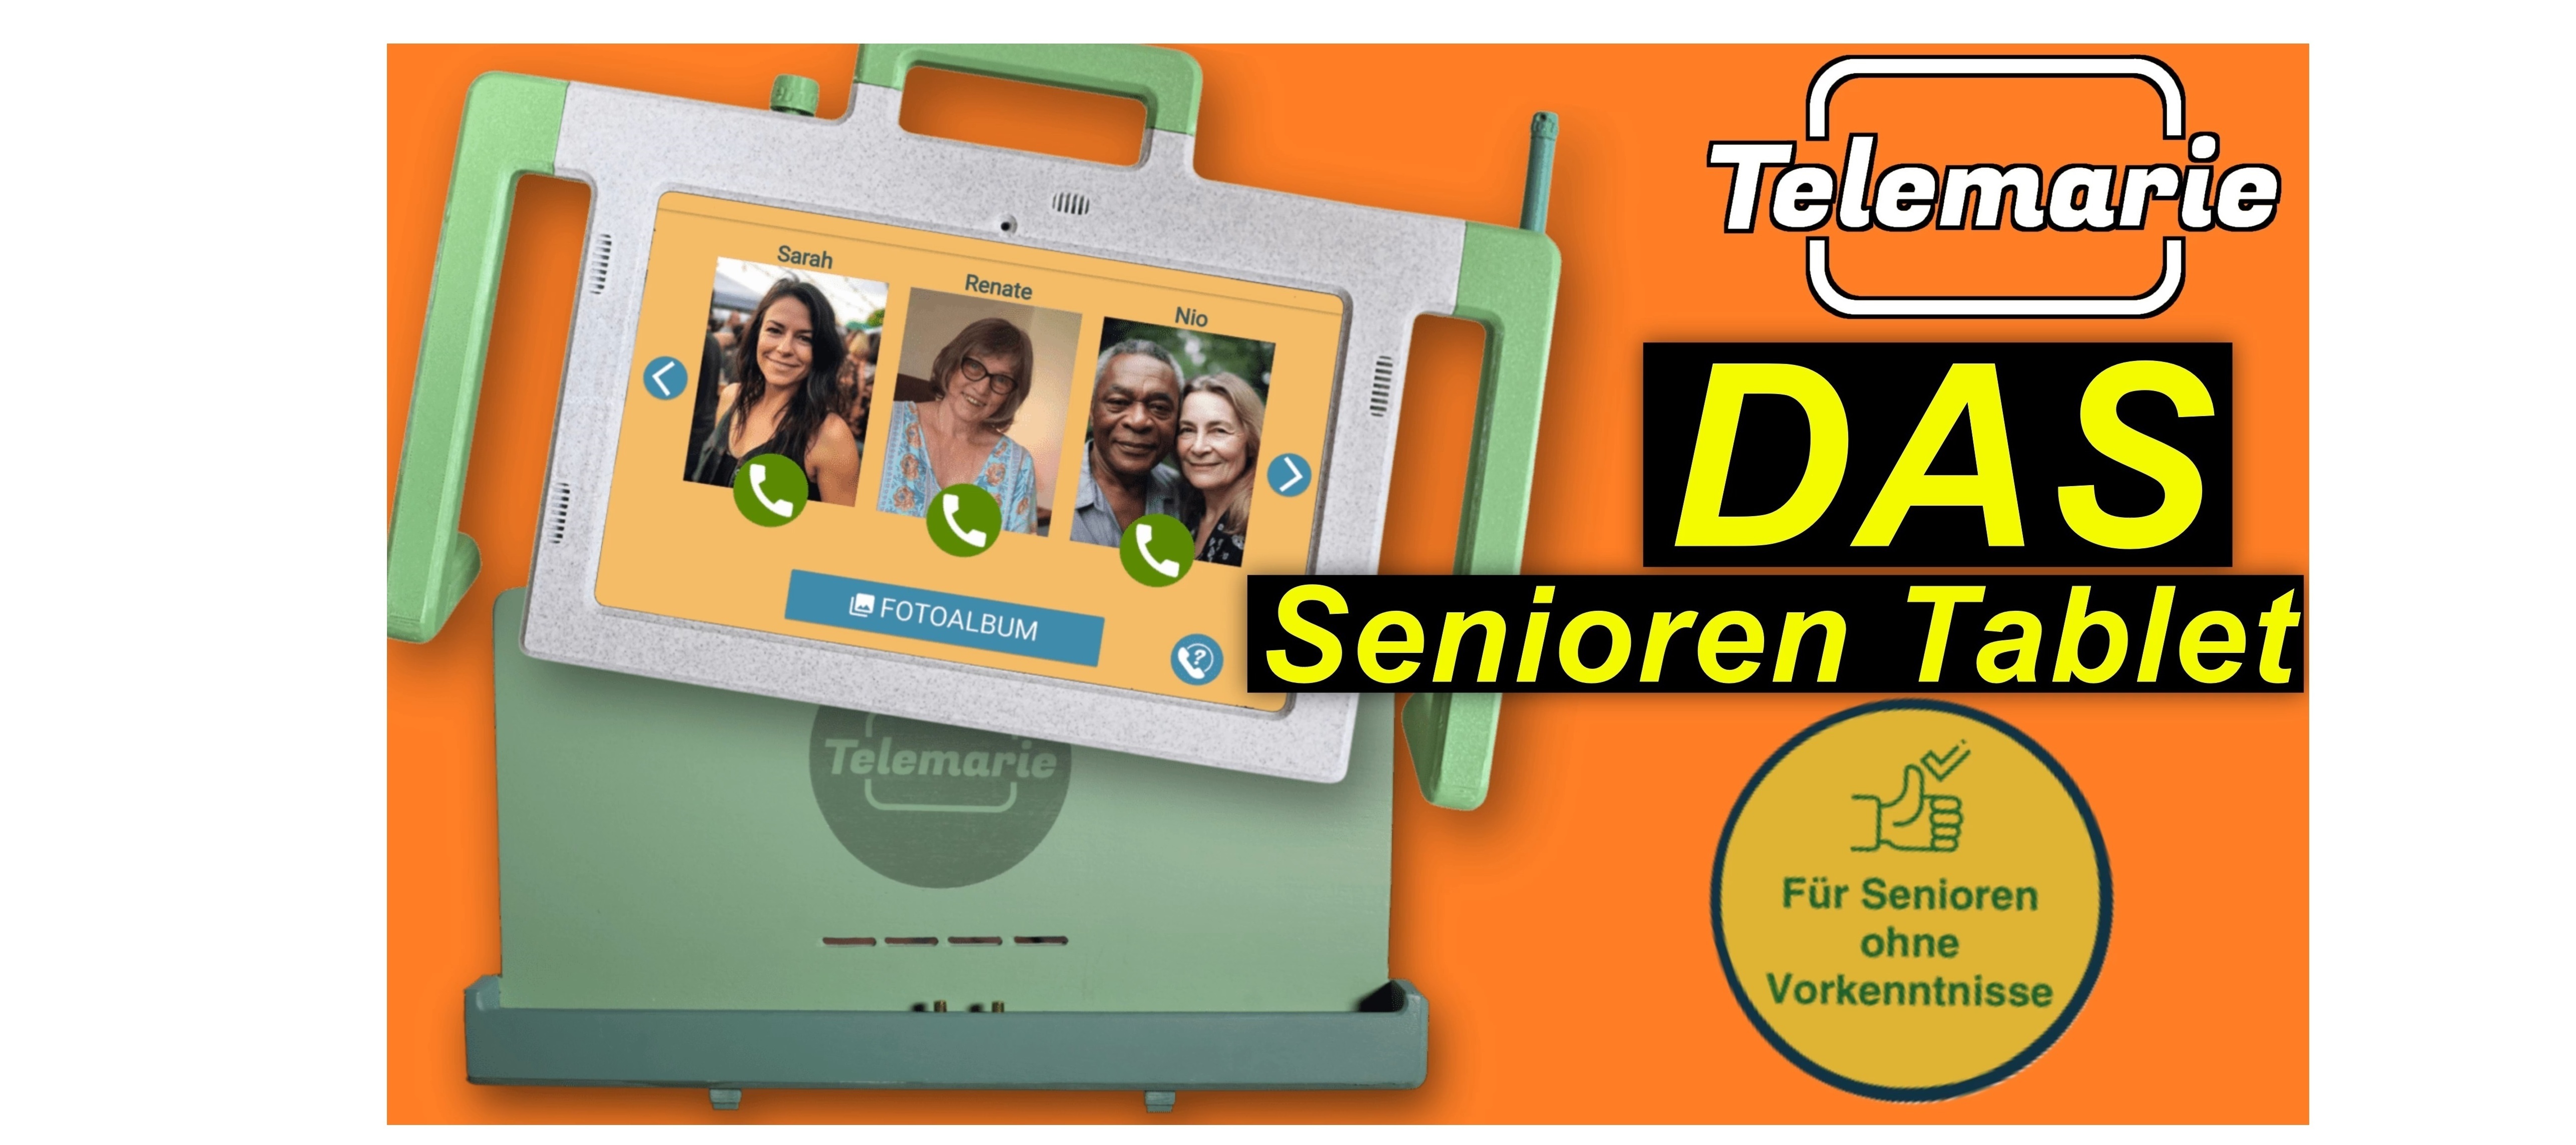 Telemarie - das Senioren Tablet im Test | SeppelPower